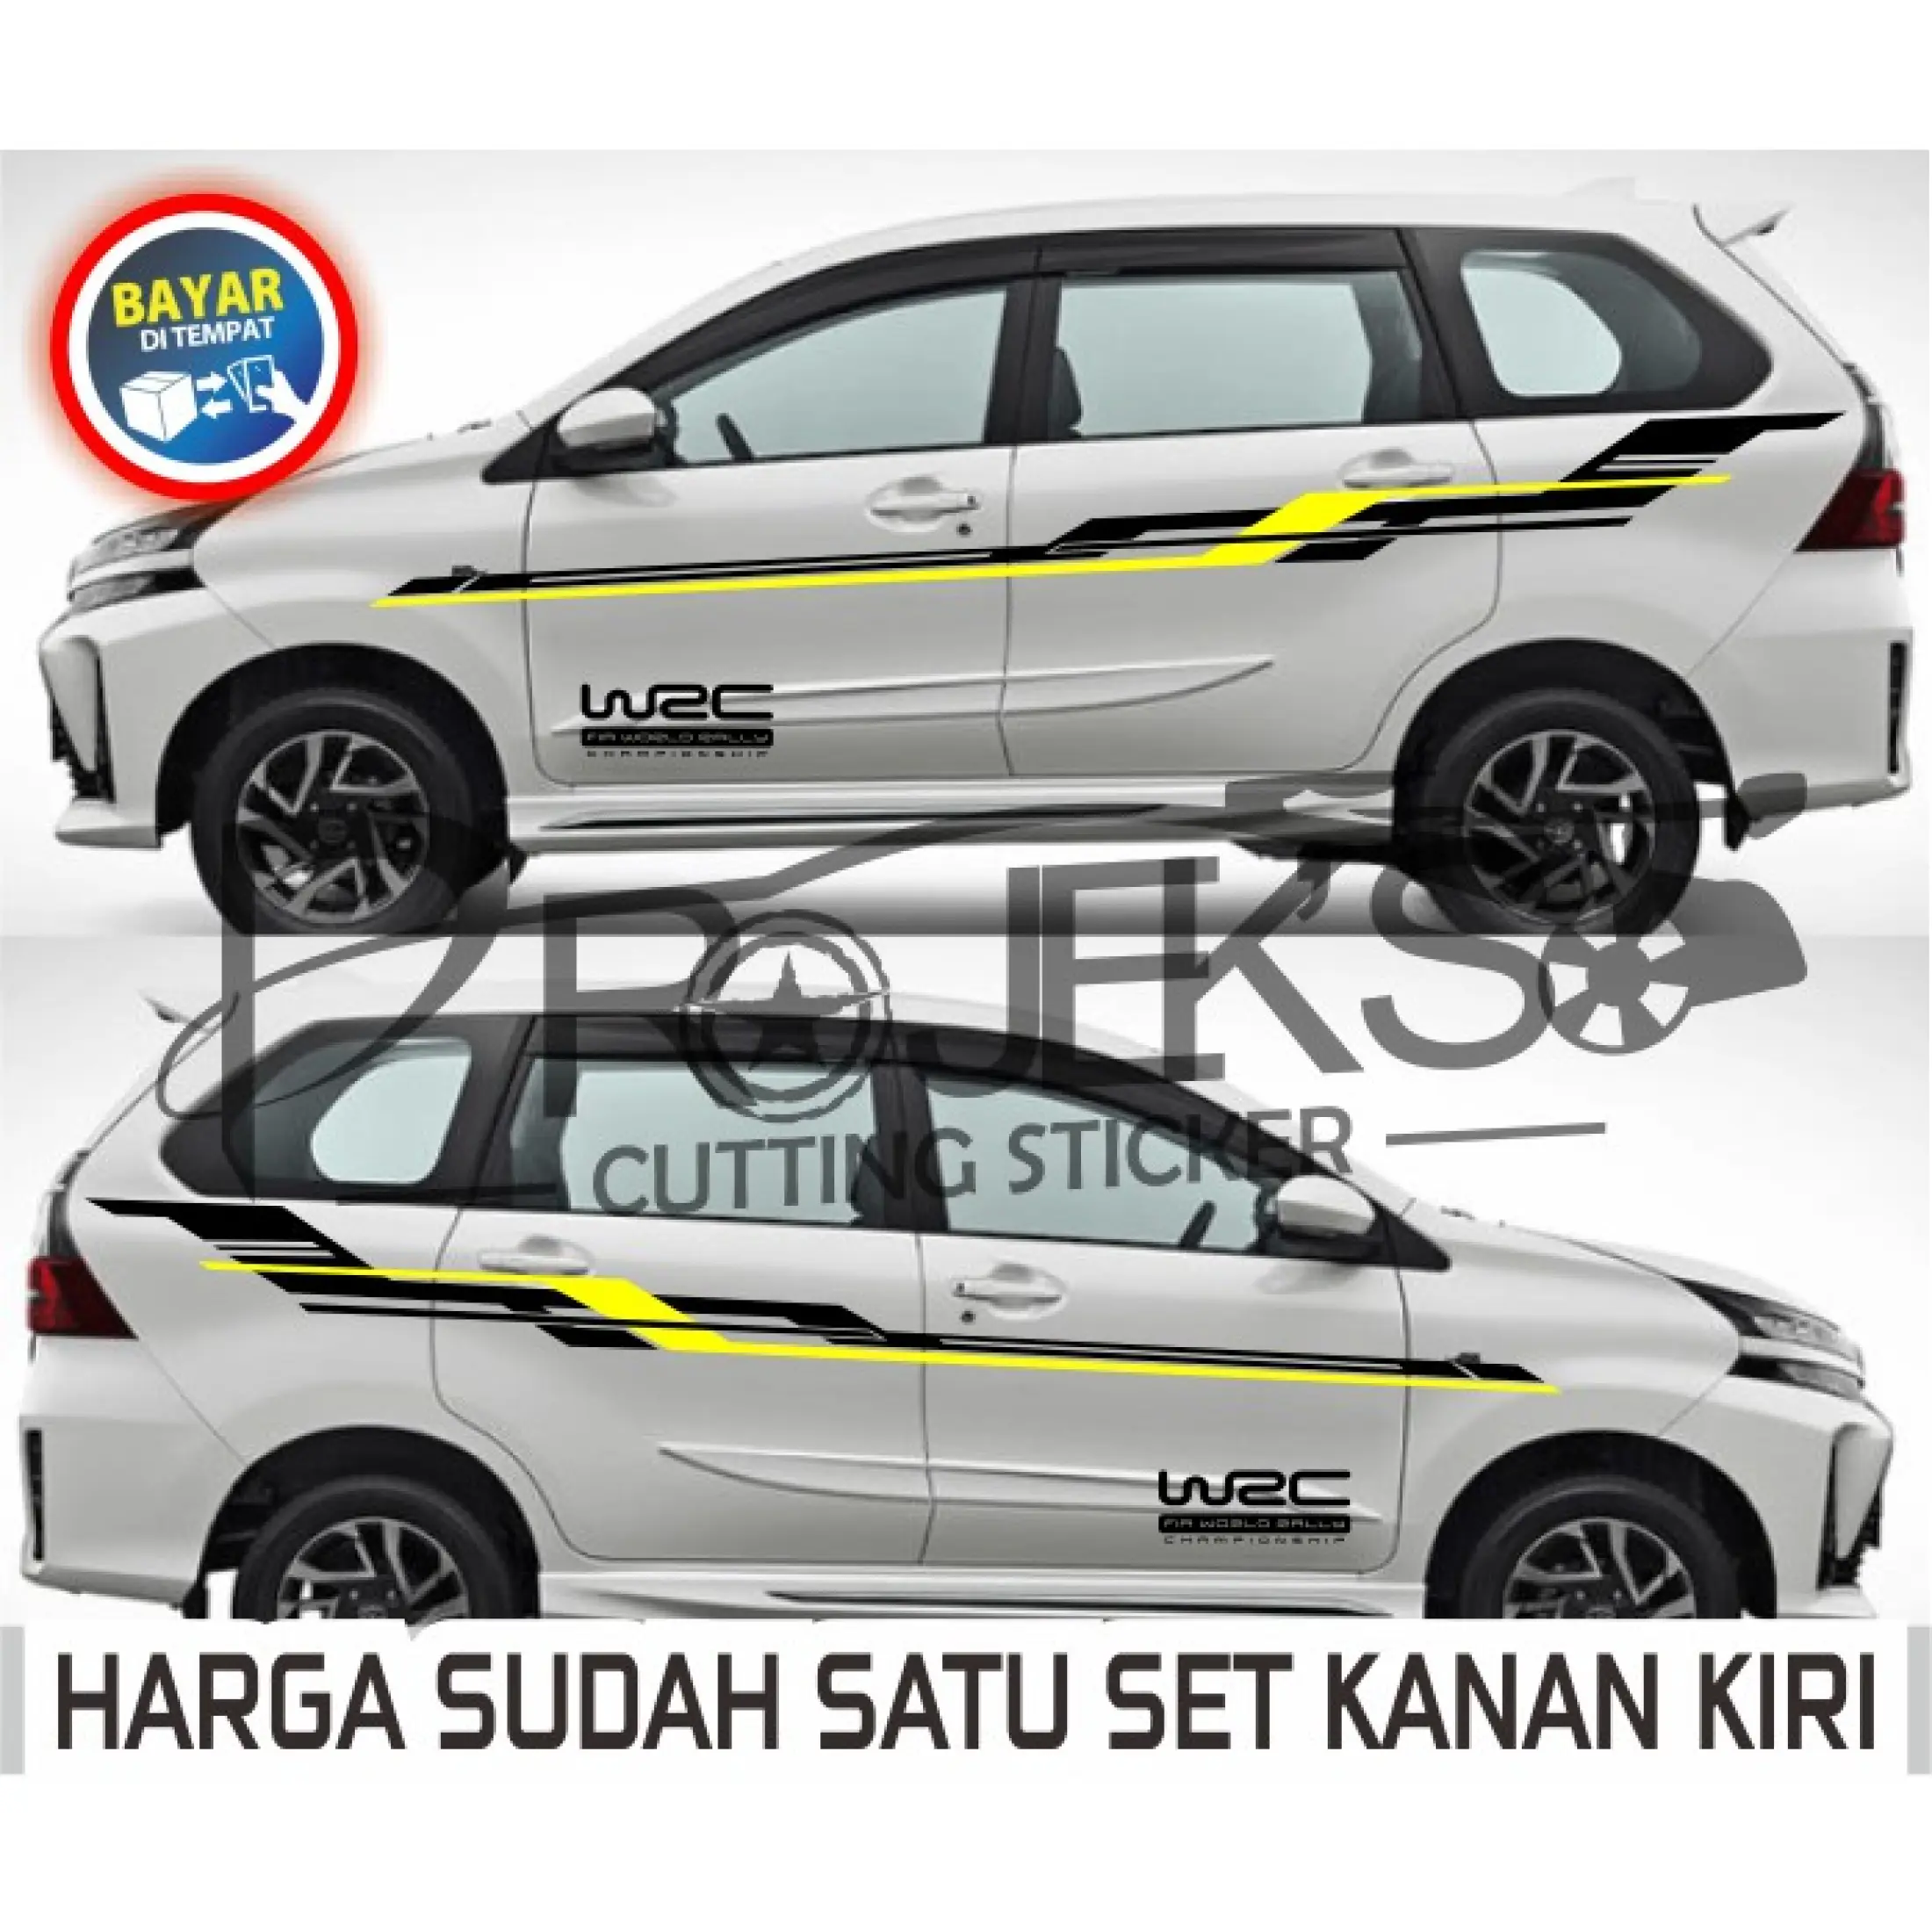 Cutting Sticker Mobil Stiker Striping List Avanza Stiker Variasi Stiker Modifikasi Mobil Terbaru Lazada Indonesia